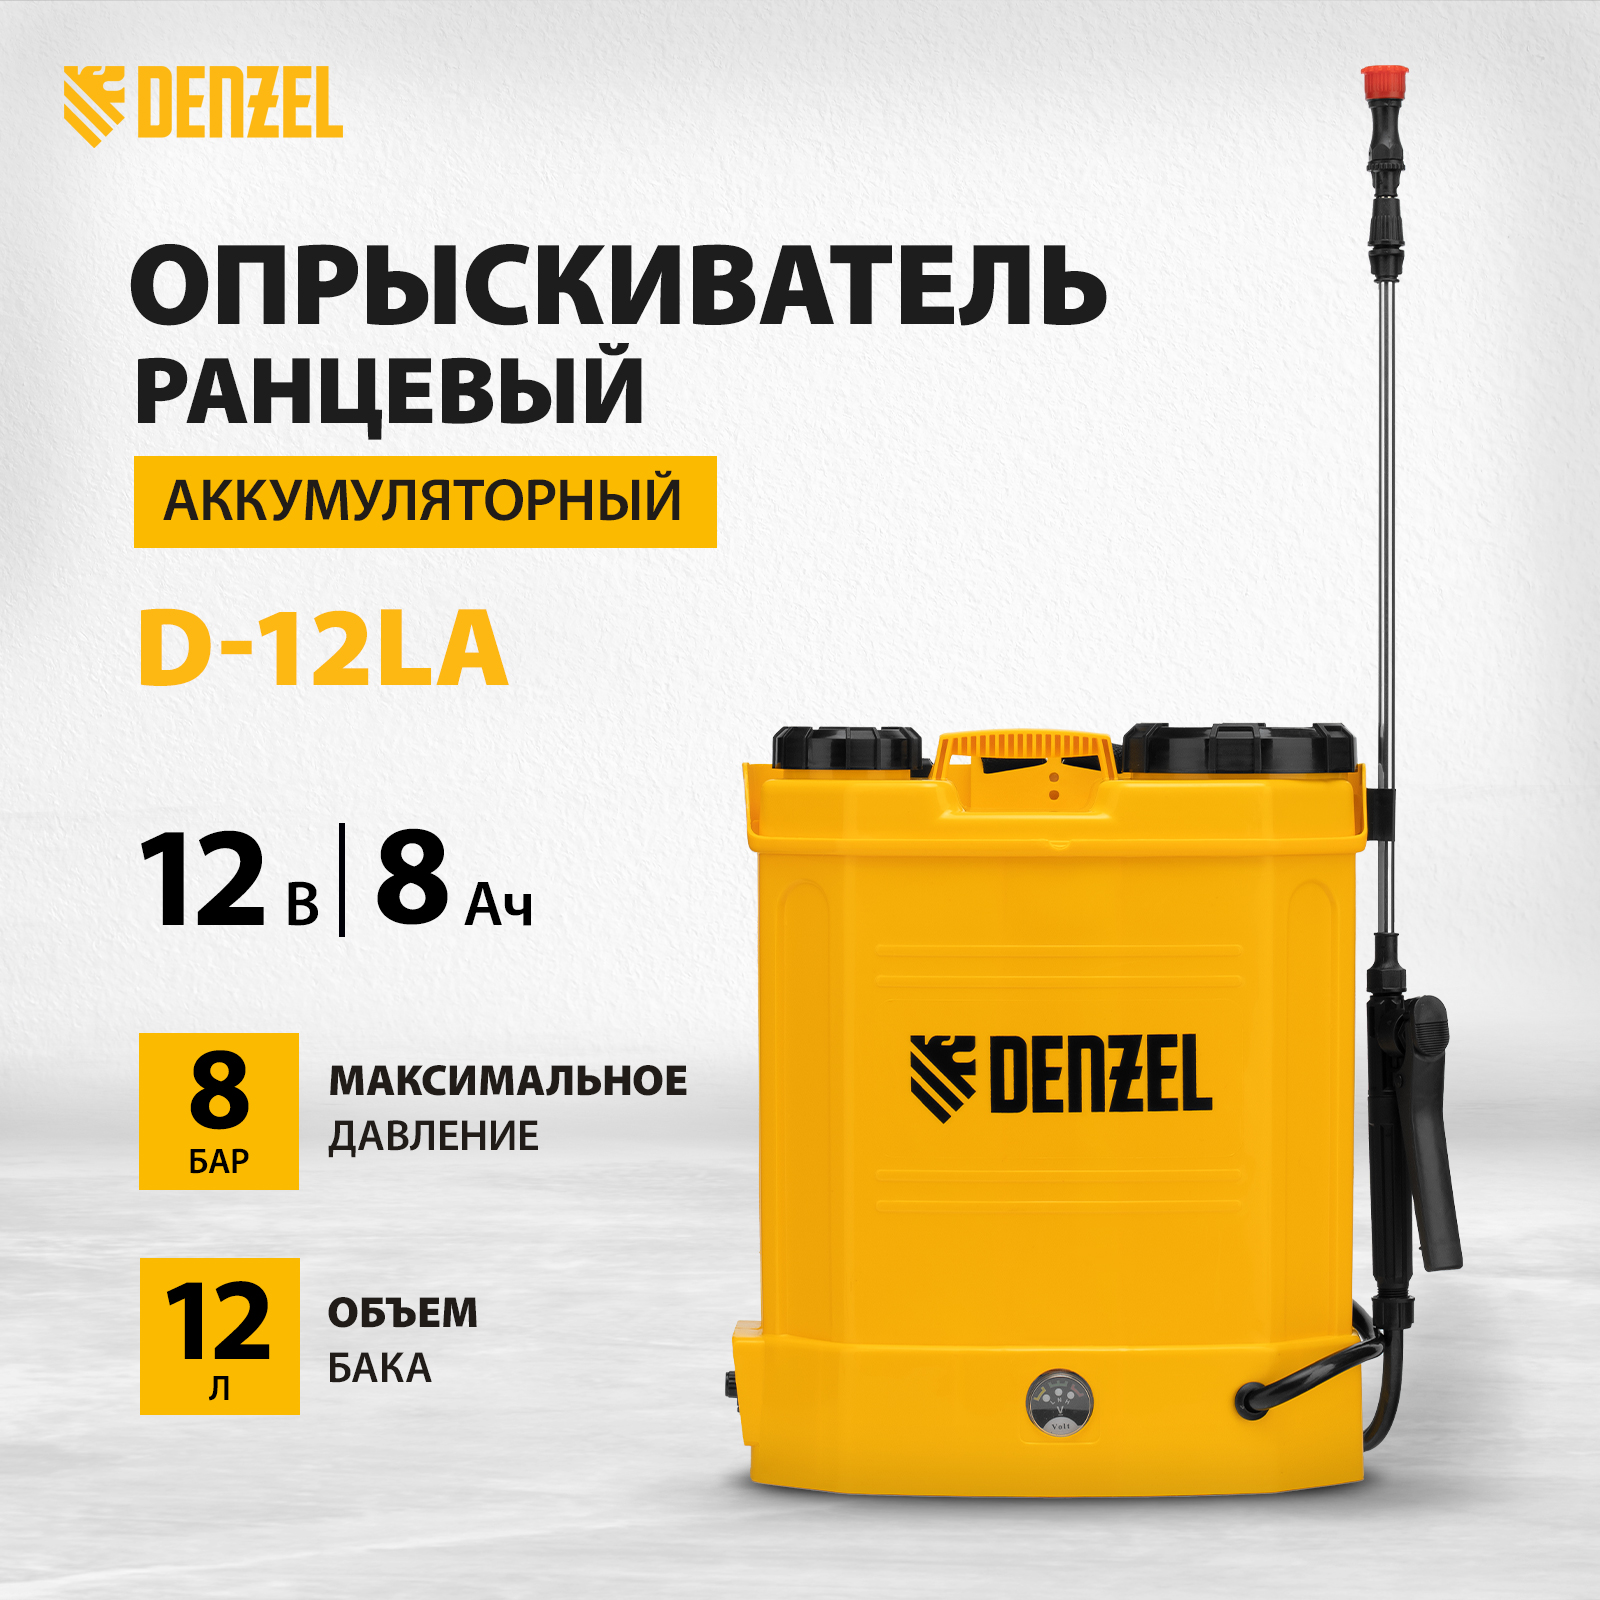 Опрыскиватель аккумуляторный ранцевый DENZEL D-12LA 12 л 12В 8 Ач 64788 - купить в Москве, цены на Мегамаркет